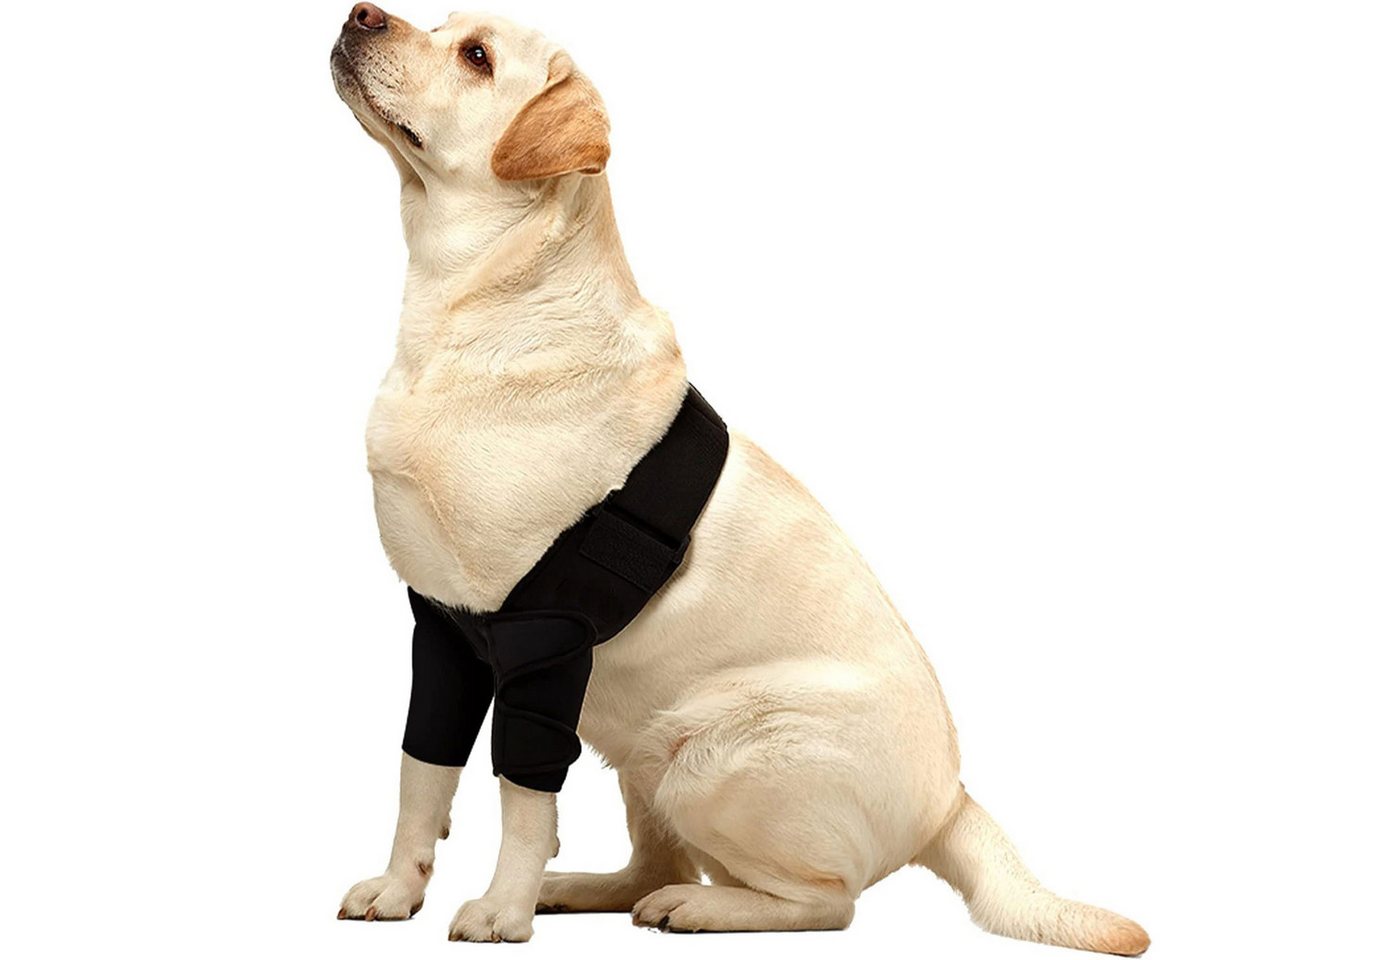 Refttenw Knieschutz Verletzungshilfe für das Vorderbein des Hundes, elastisch von Refttenw